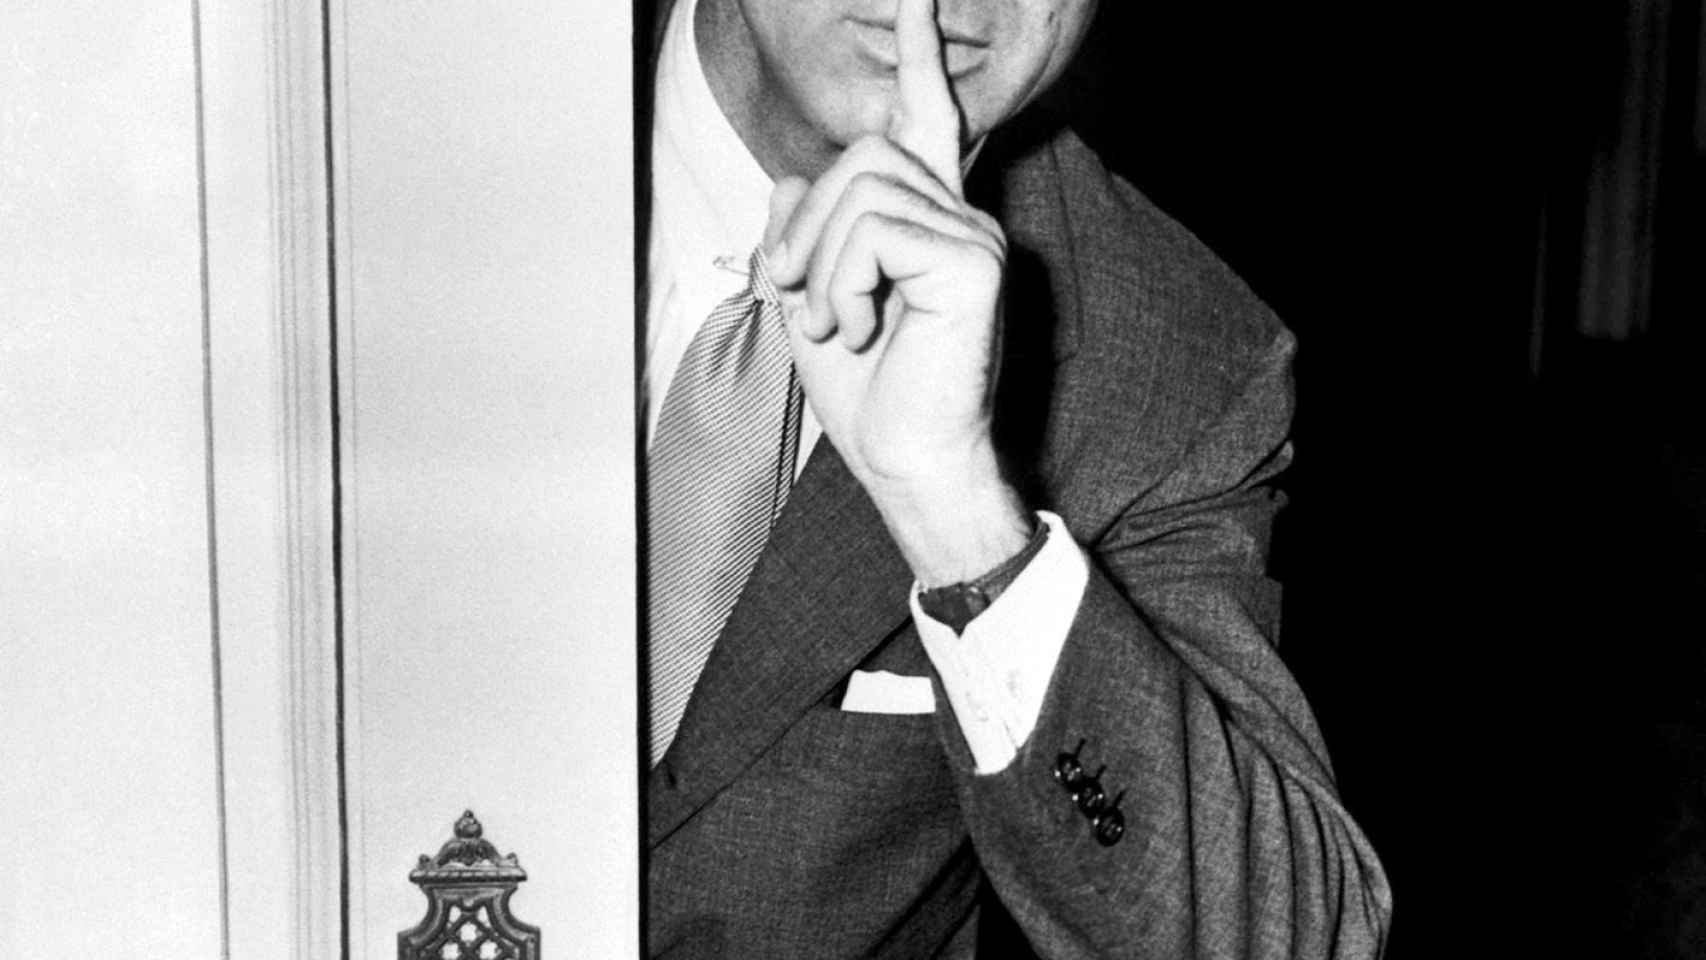 El verdadero Cary Grant era tacaño, avaro y encantador